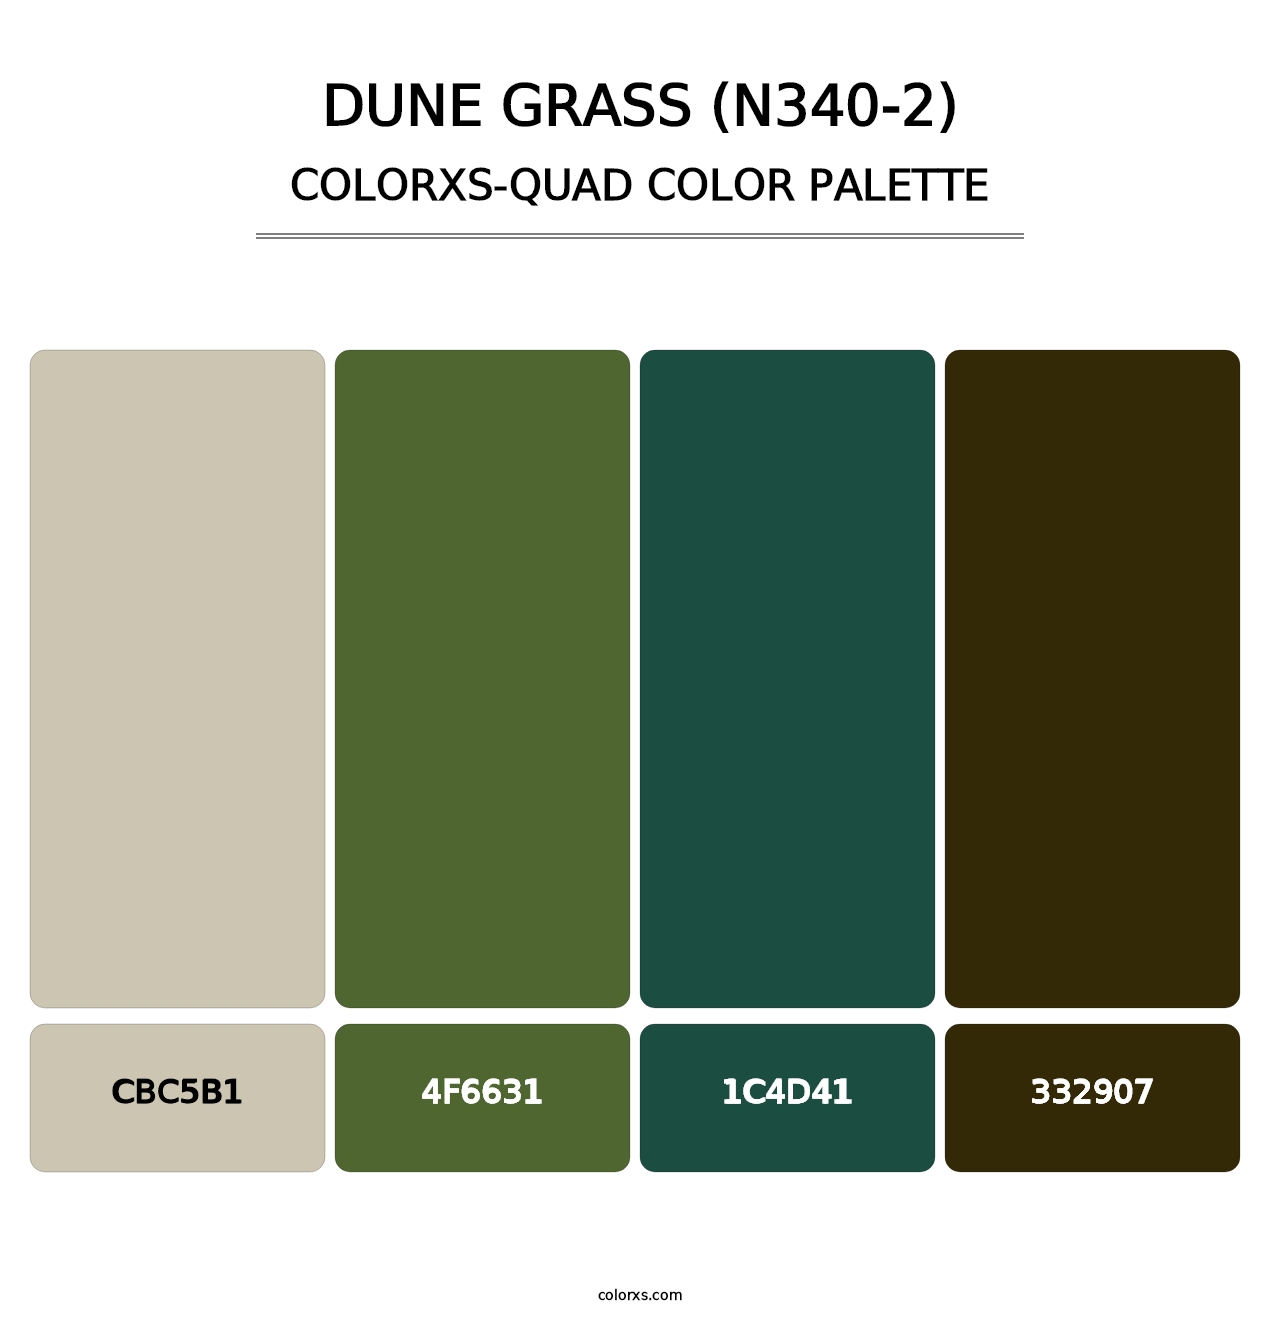 Dune Grass (N340-2) - Colorxs Quad Palette